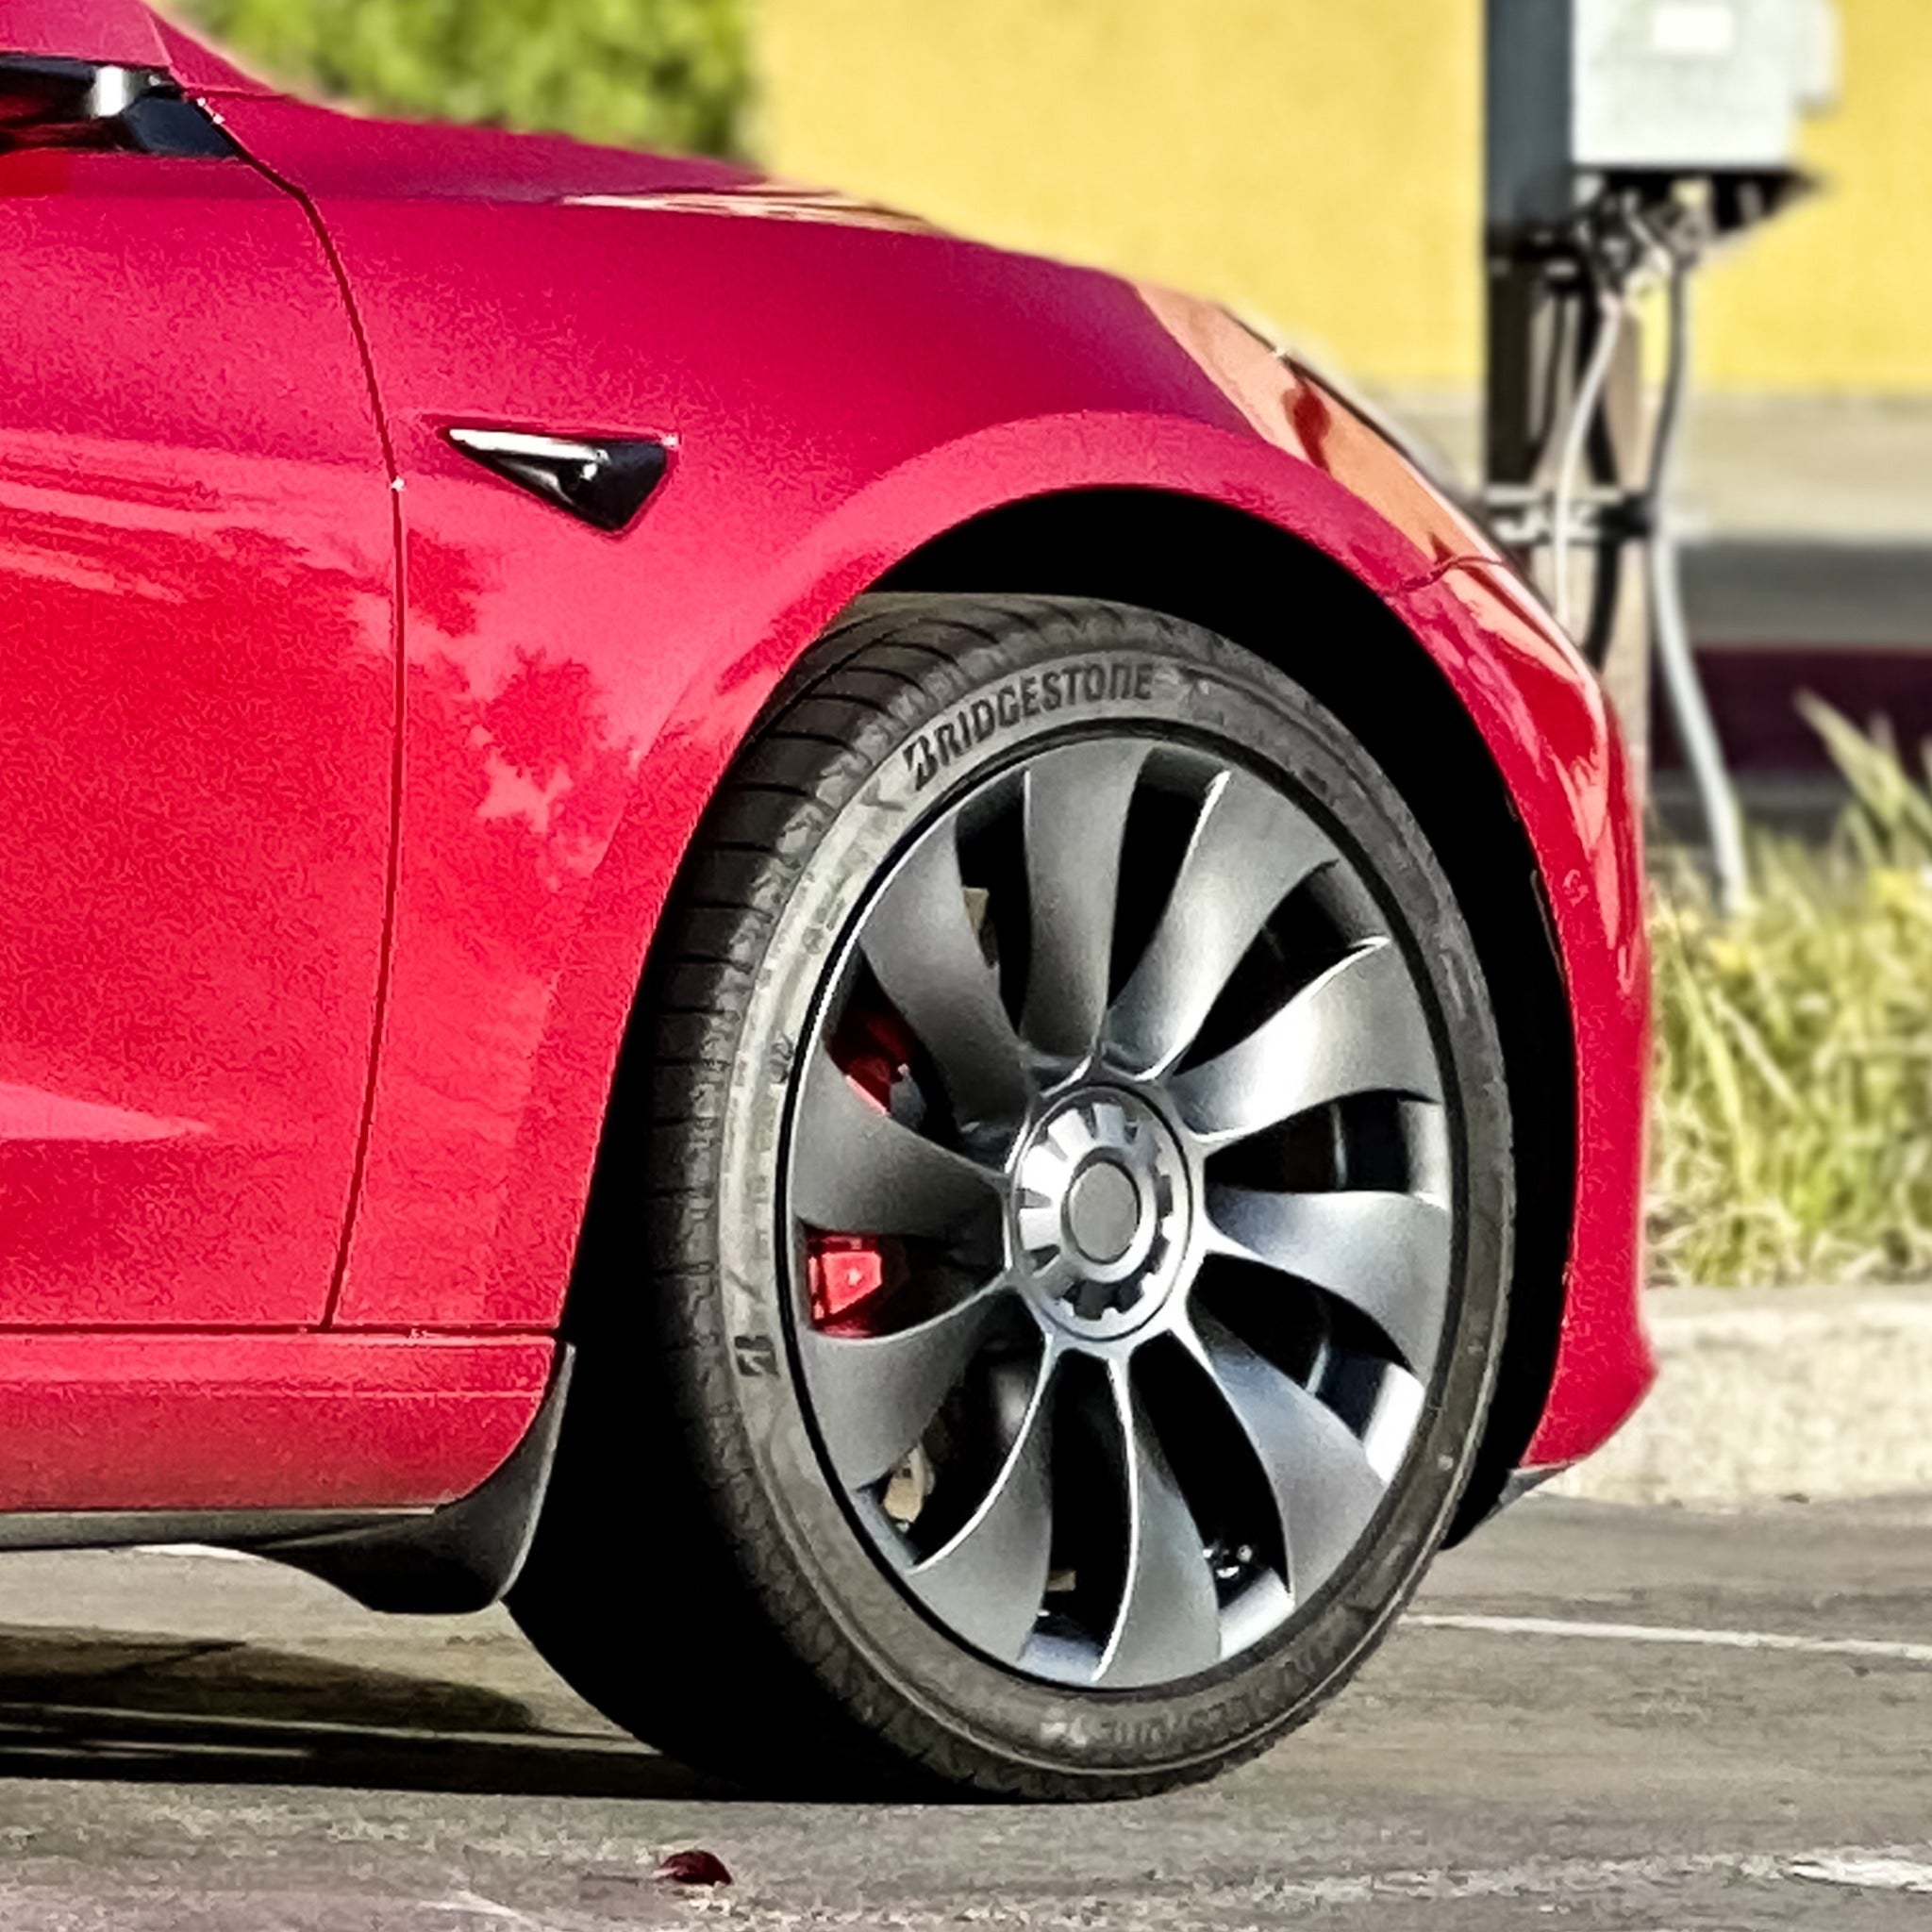 Uberturbine Wheel Covers For Tesla Model 3 19'' Sport Wheels (2017-2023)